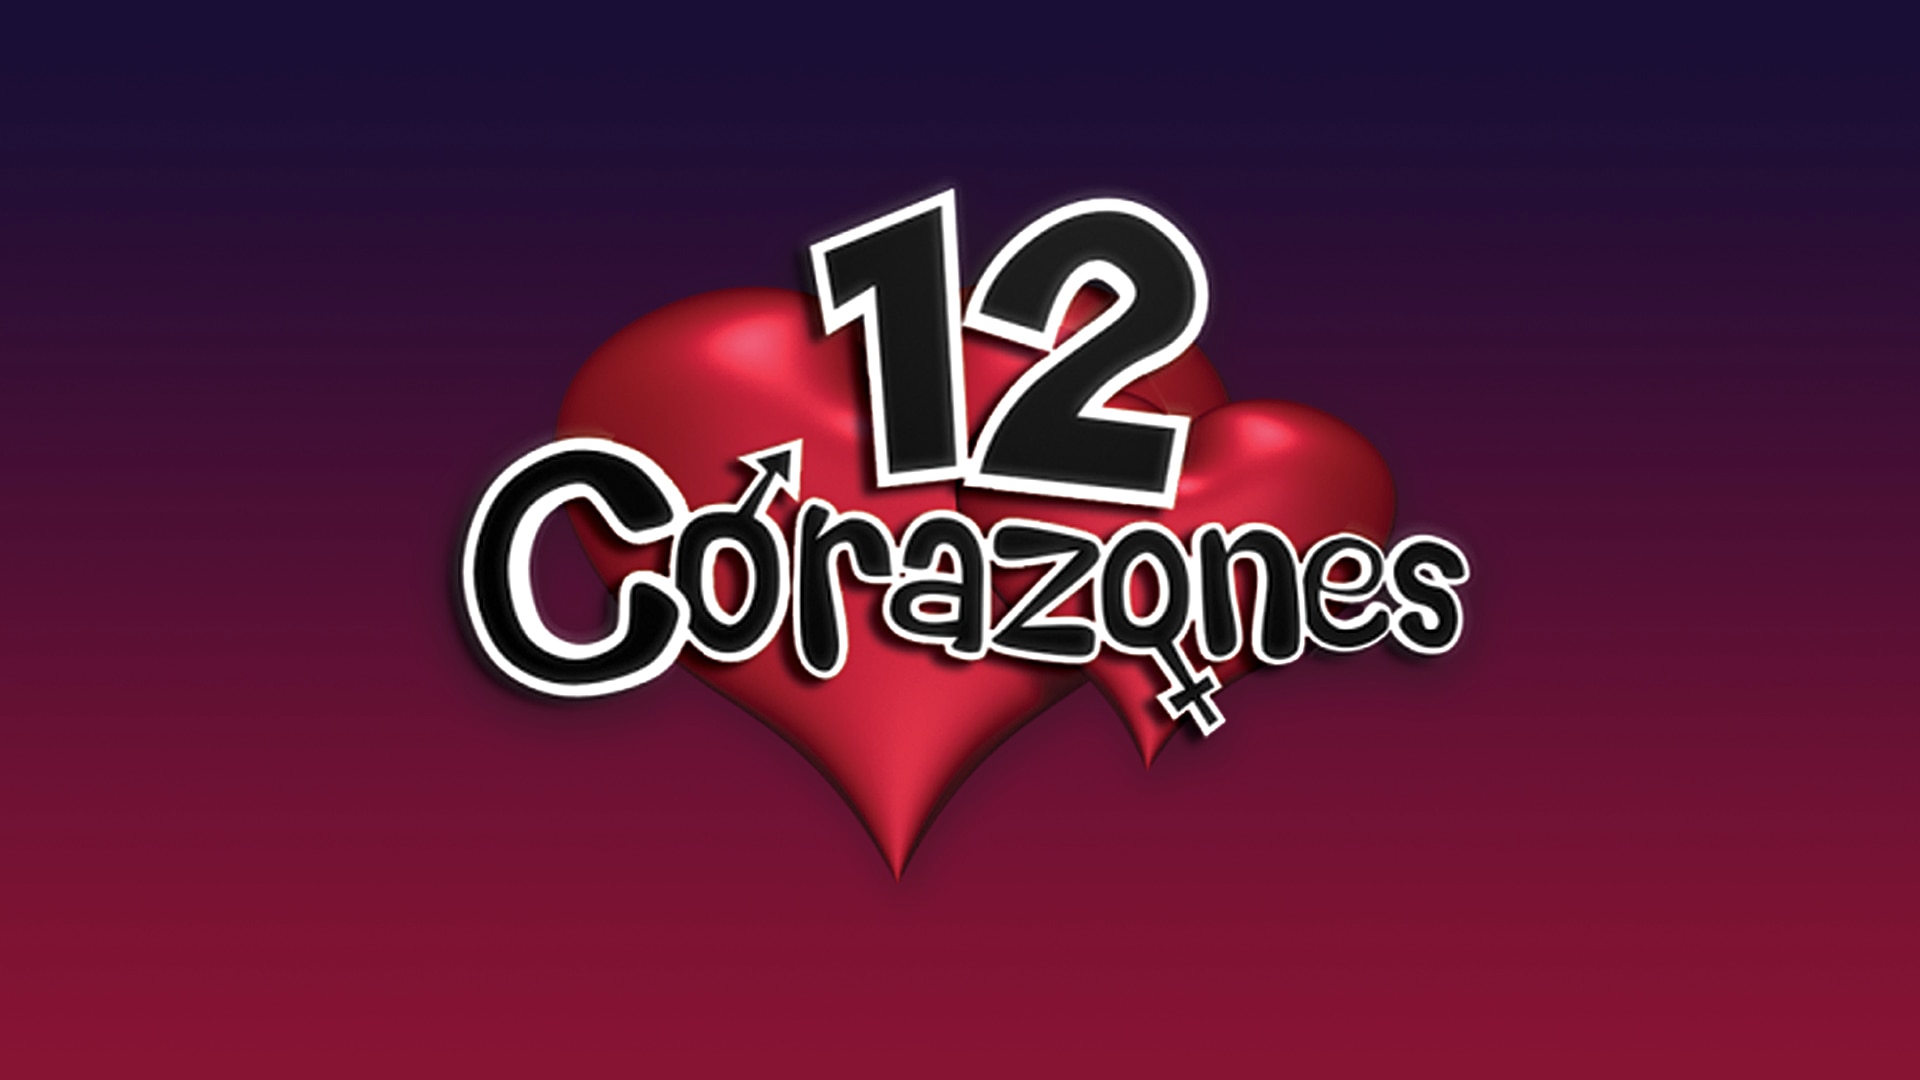 12 Corazones.